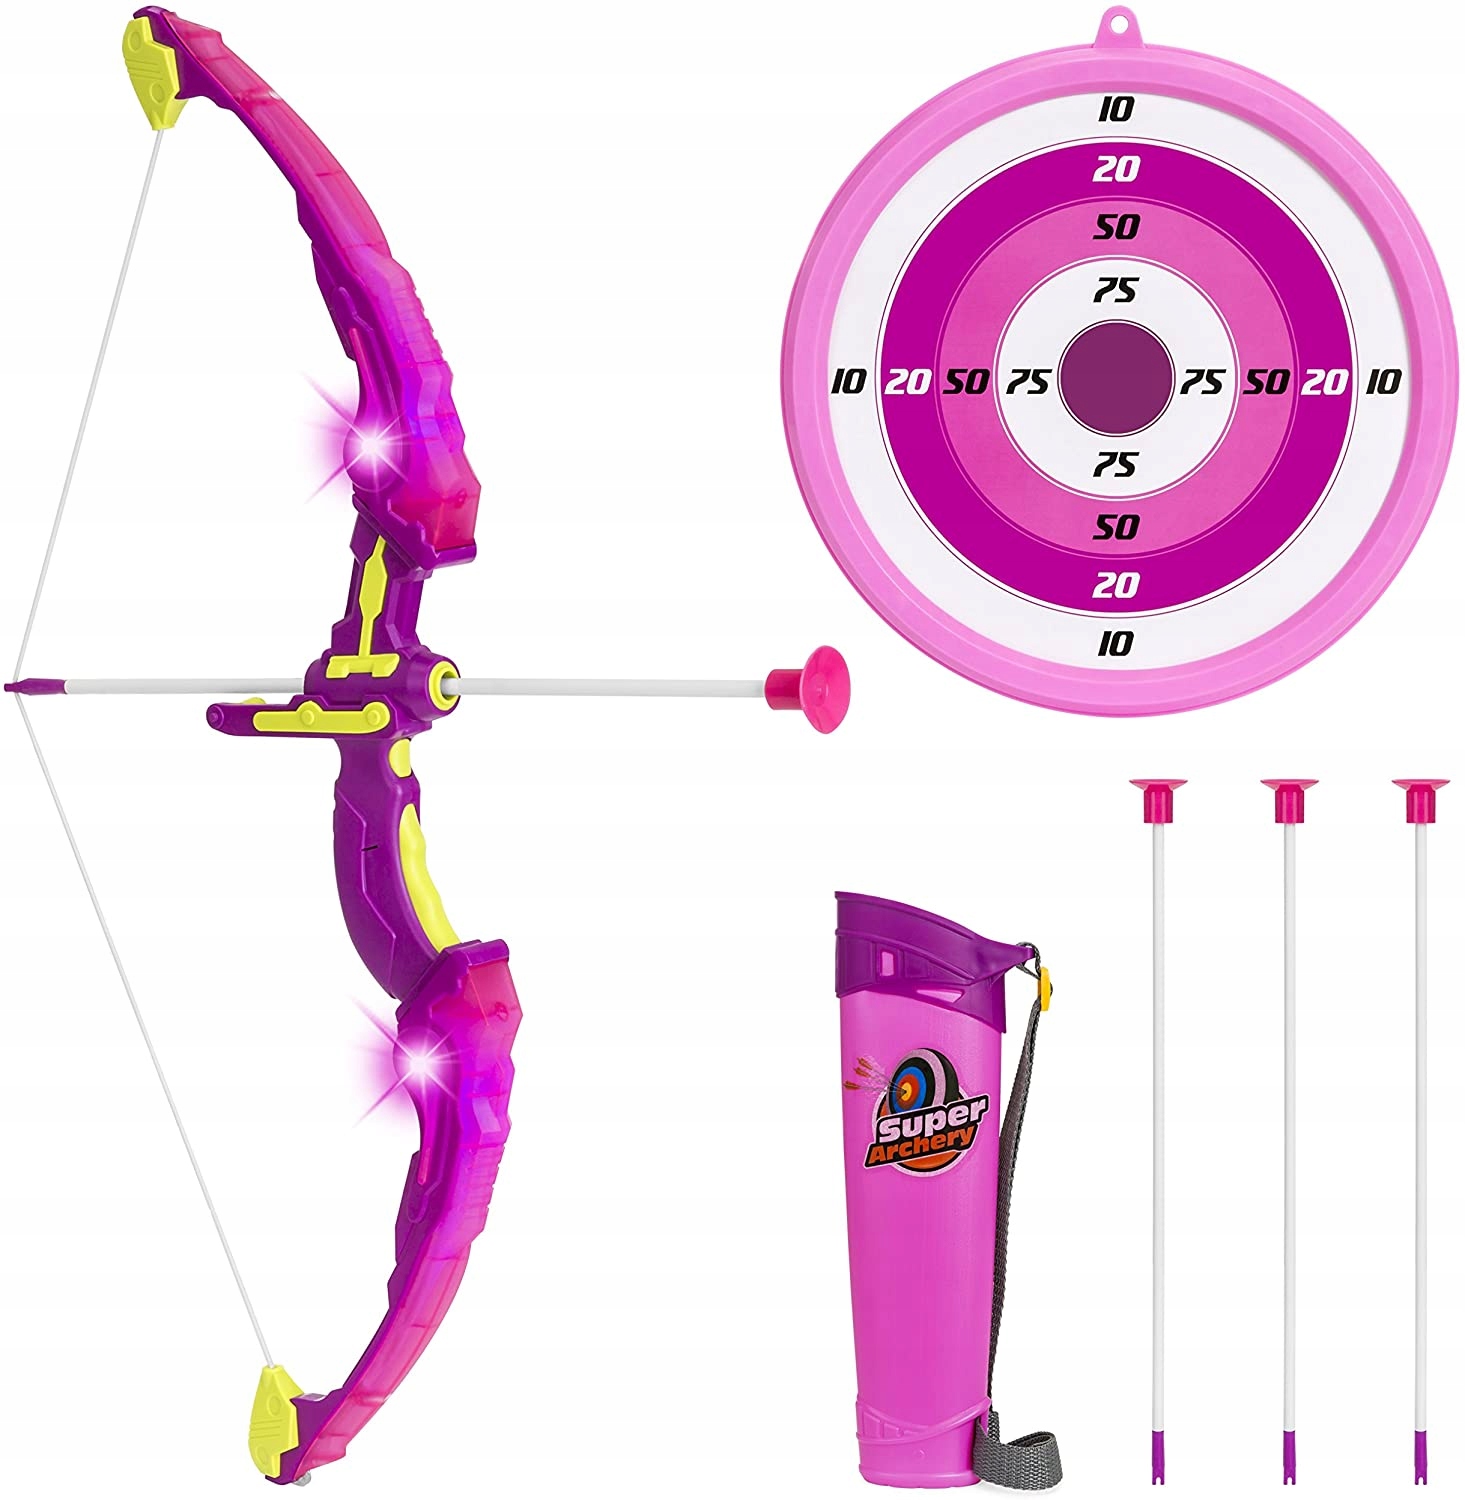 Комплект для стрельбы из лука SainSmart Розовый комплект для стрельбы из лука Новинка